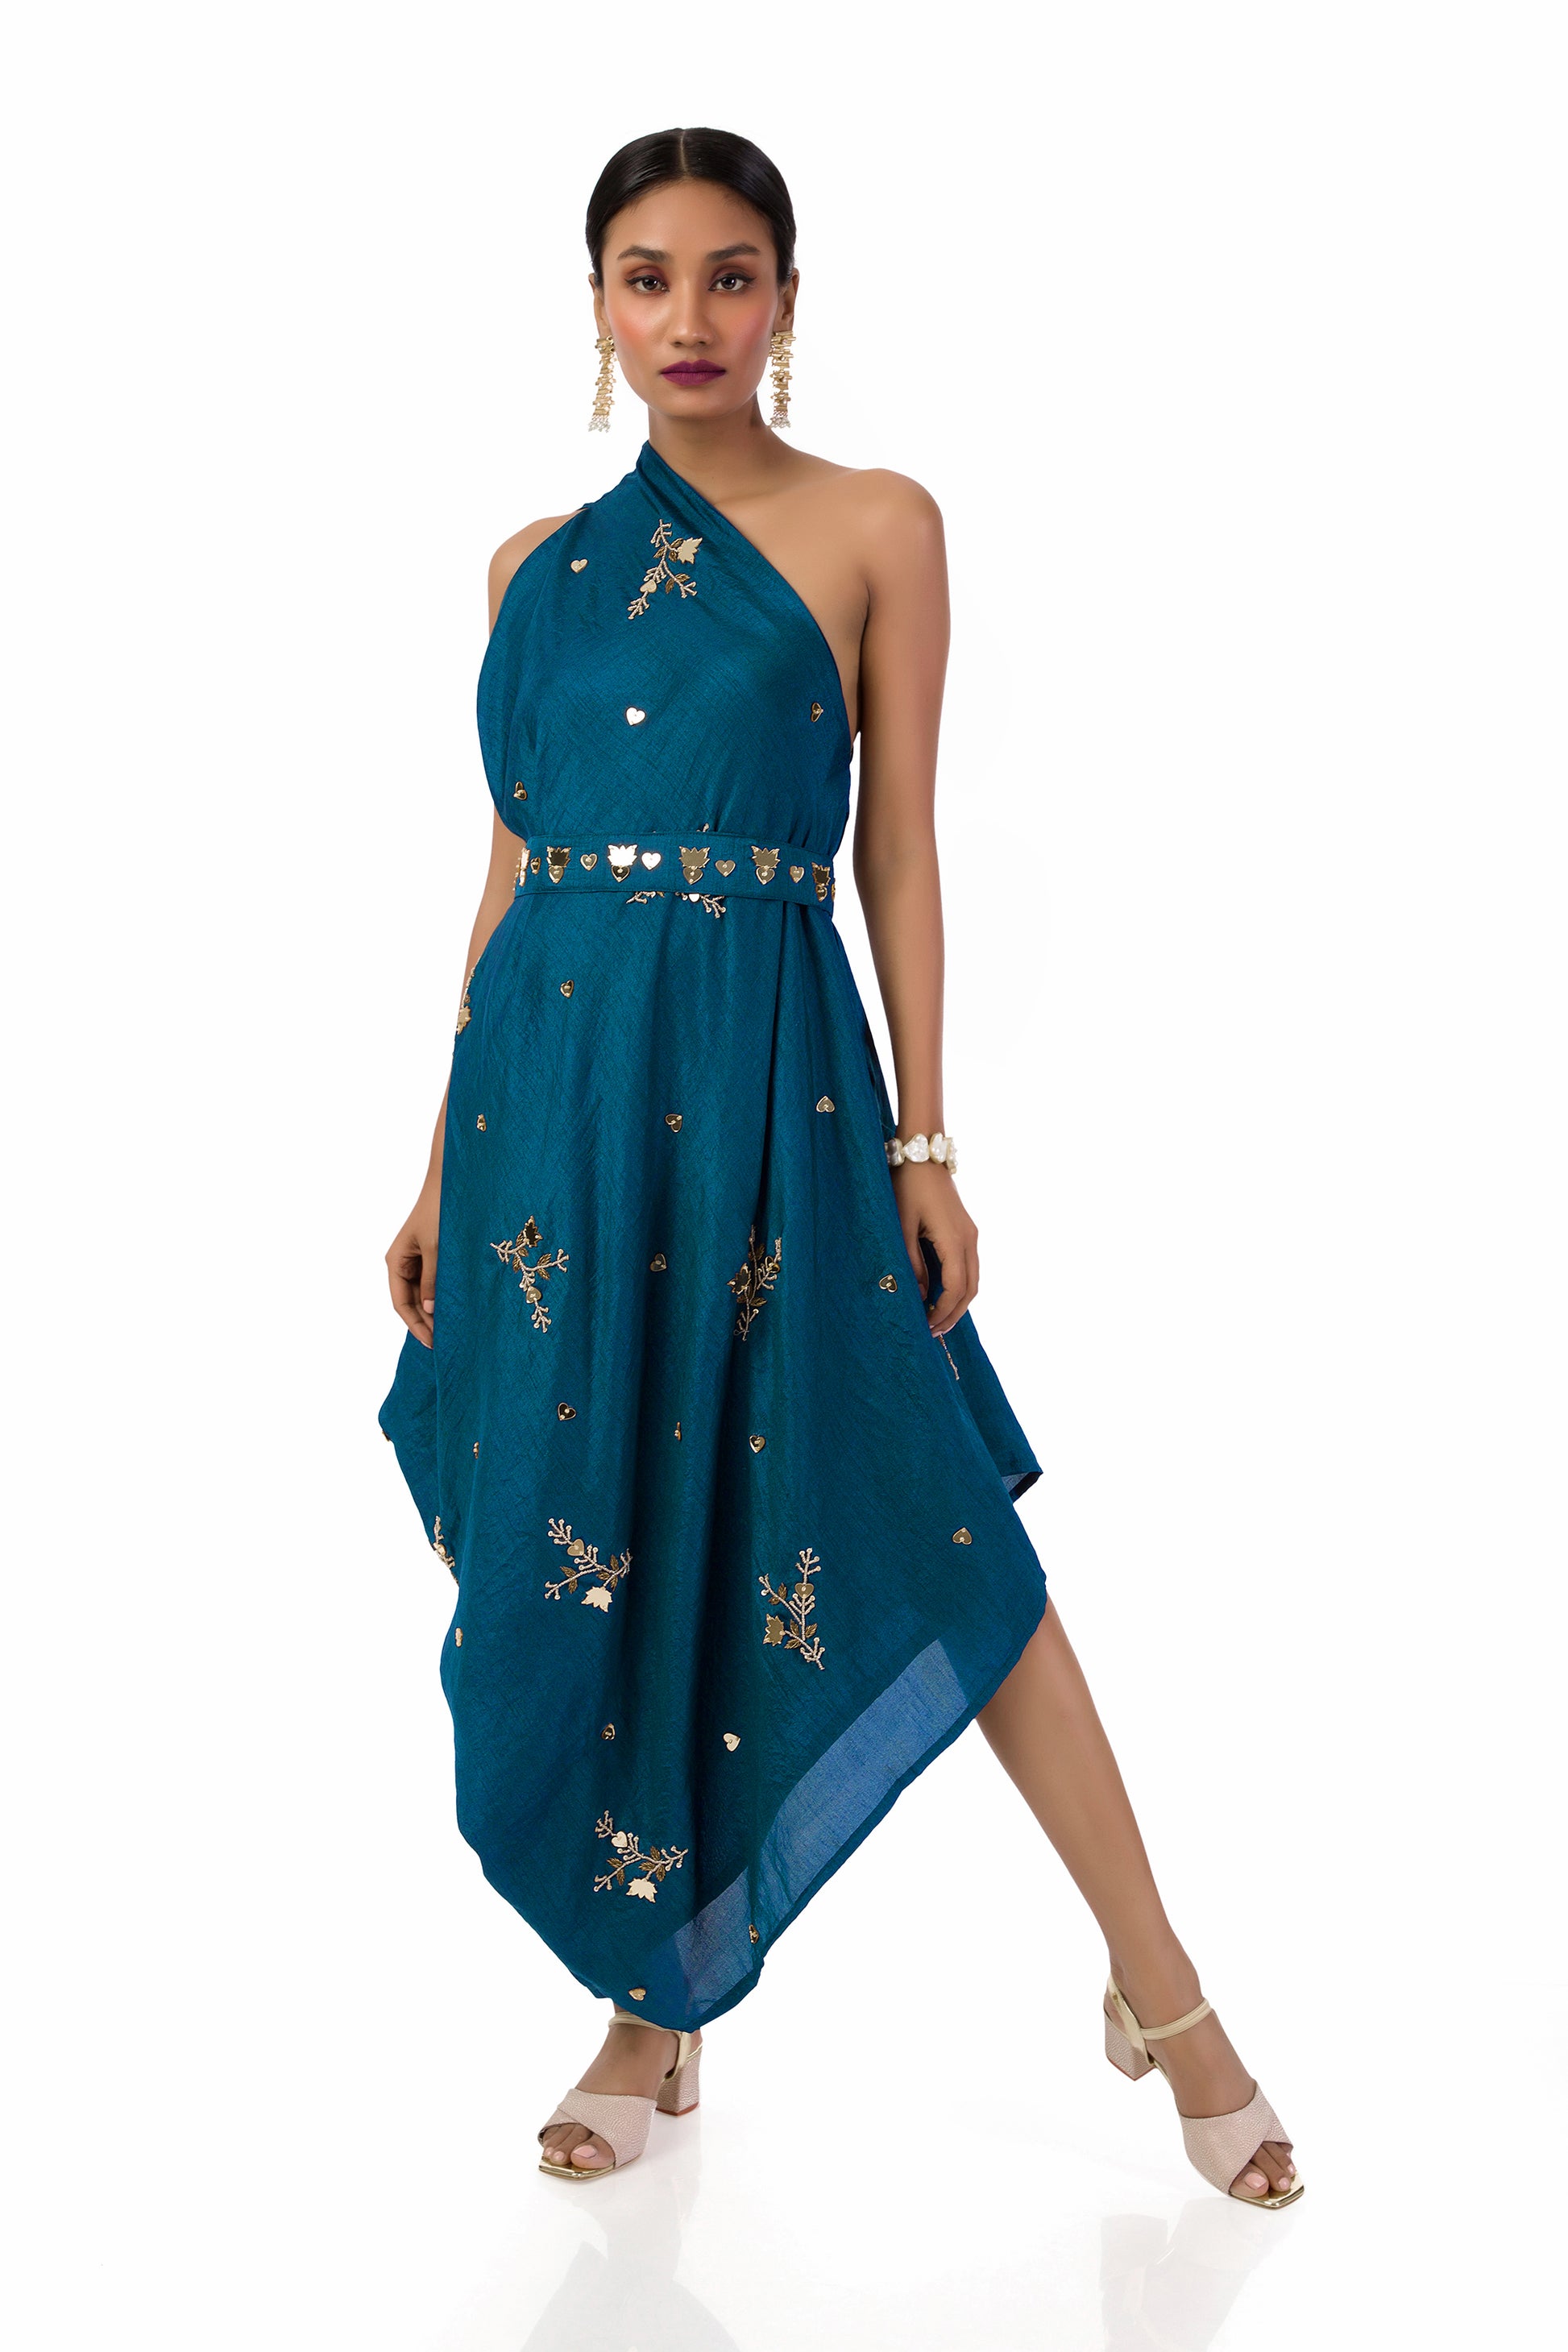 Indo Western Dress : The Amalgam of Fashion - KhammaGhani